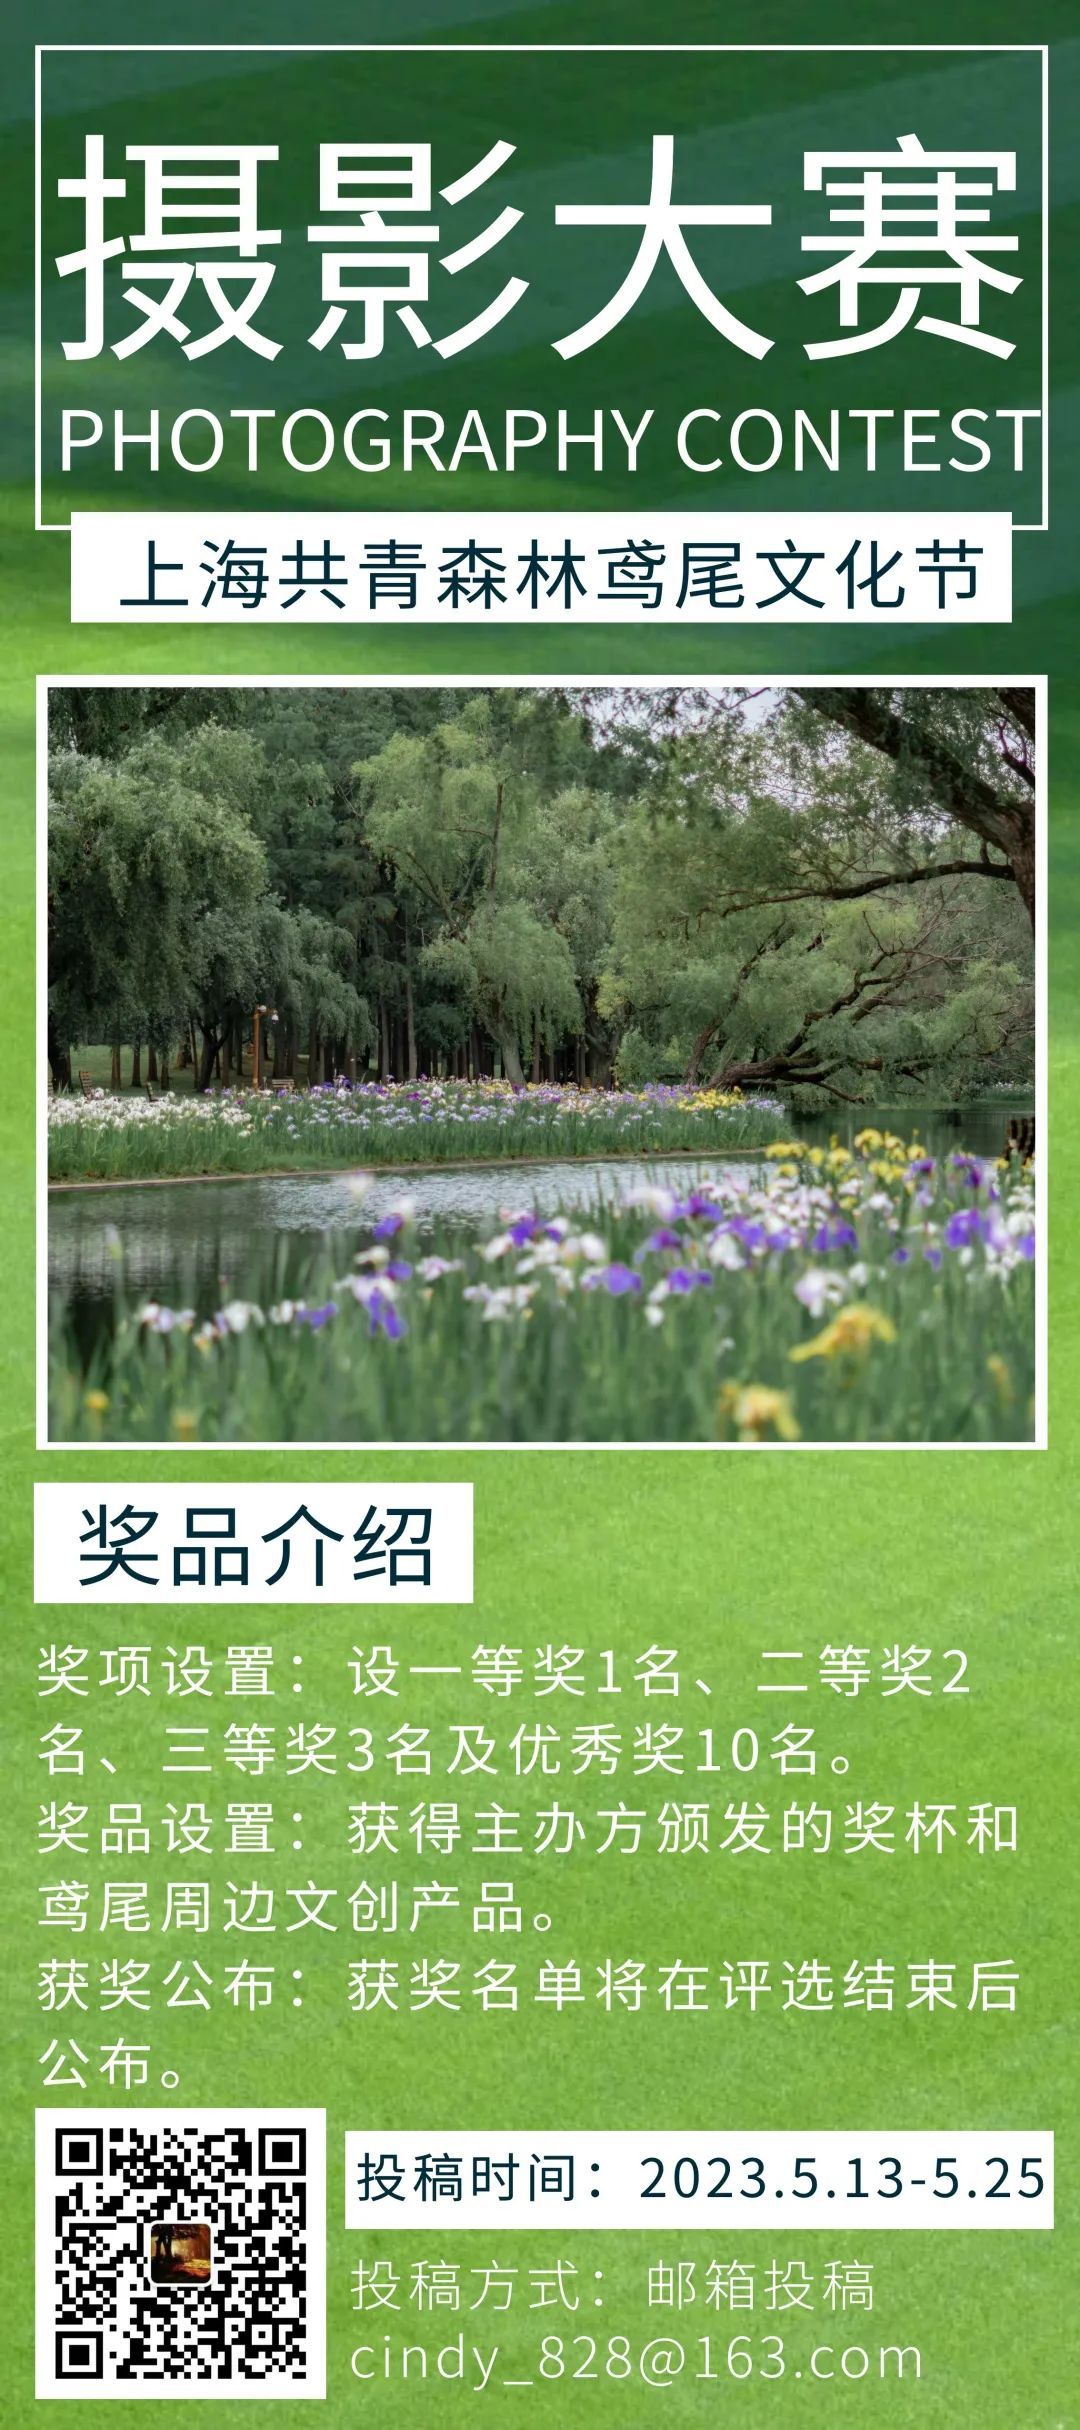 英皇体育官网活动丨@摄影达人首届上海共青森林鸢尾文化节摄影大赛开始征稿啦！(图1)